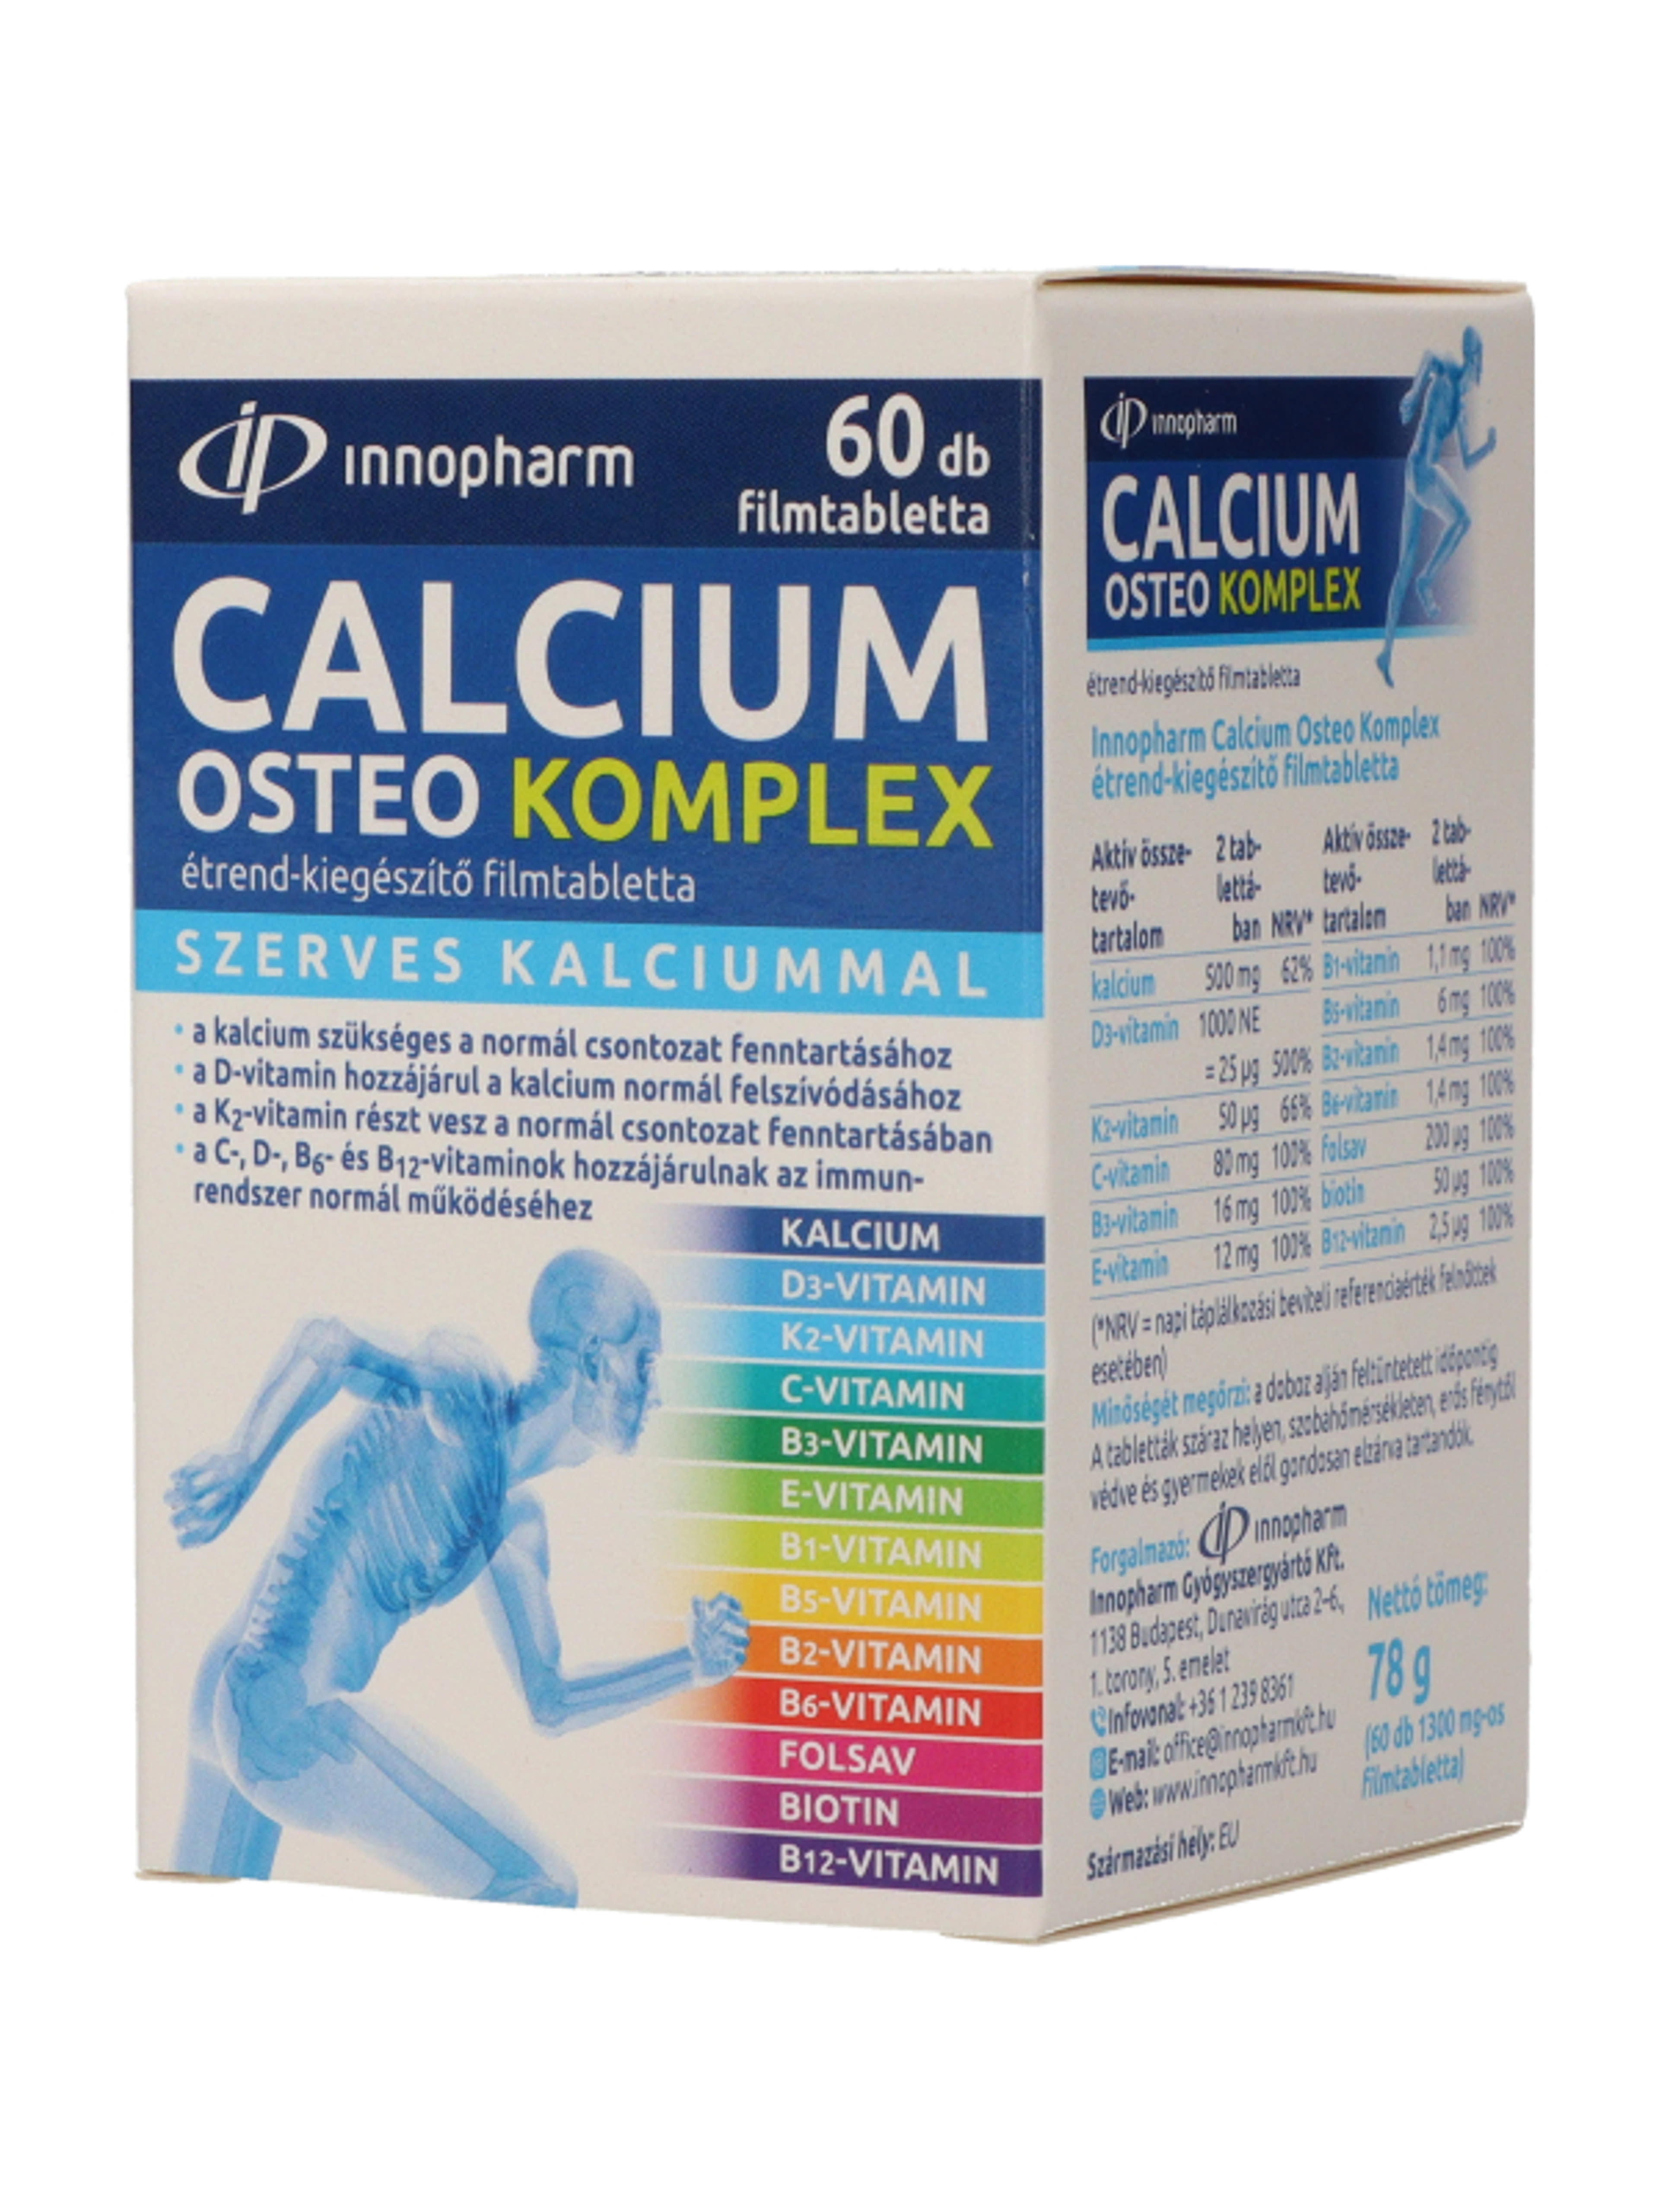 Innopharm Kalcium Osteo komplex étrendkiegészítő filmtabletta - 60 db-3